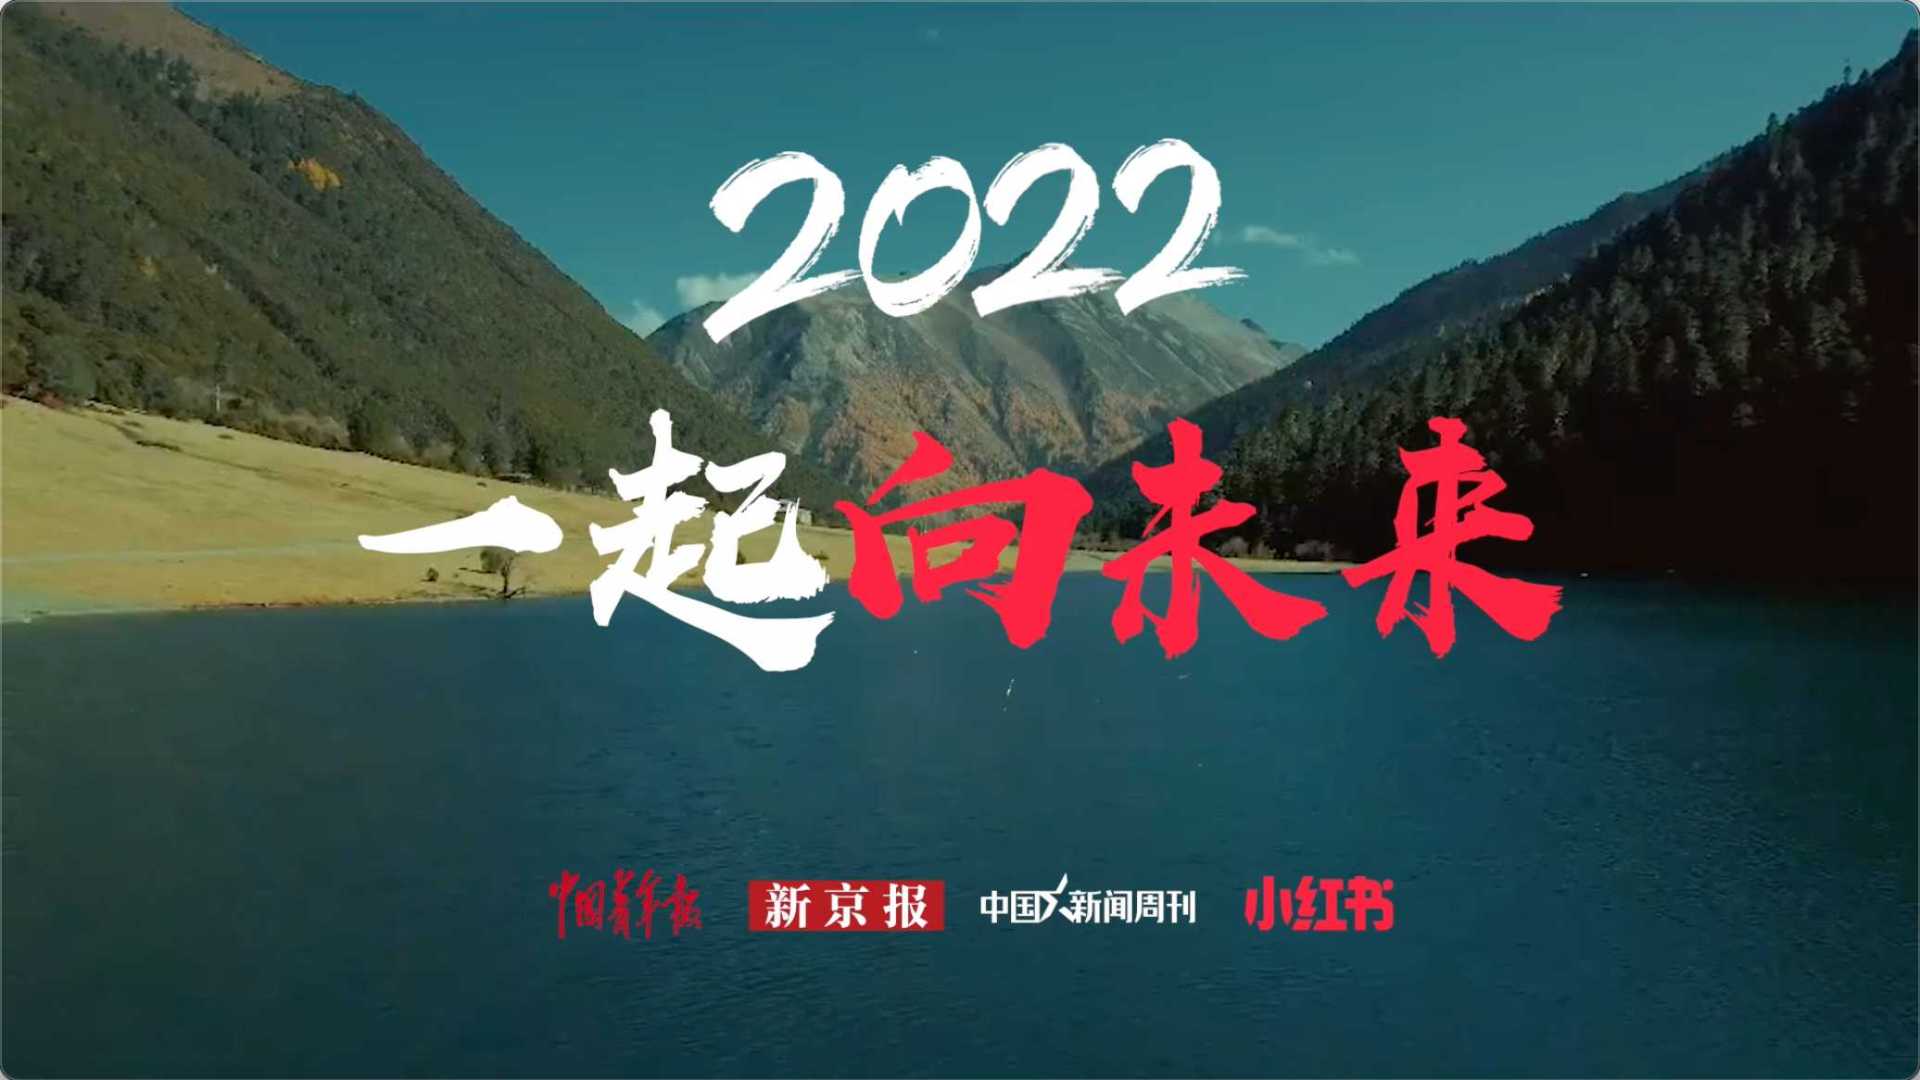 2022 「小红书」十大生活趋势